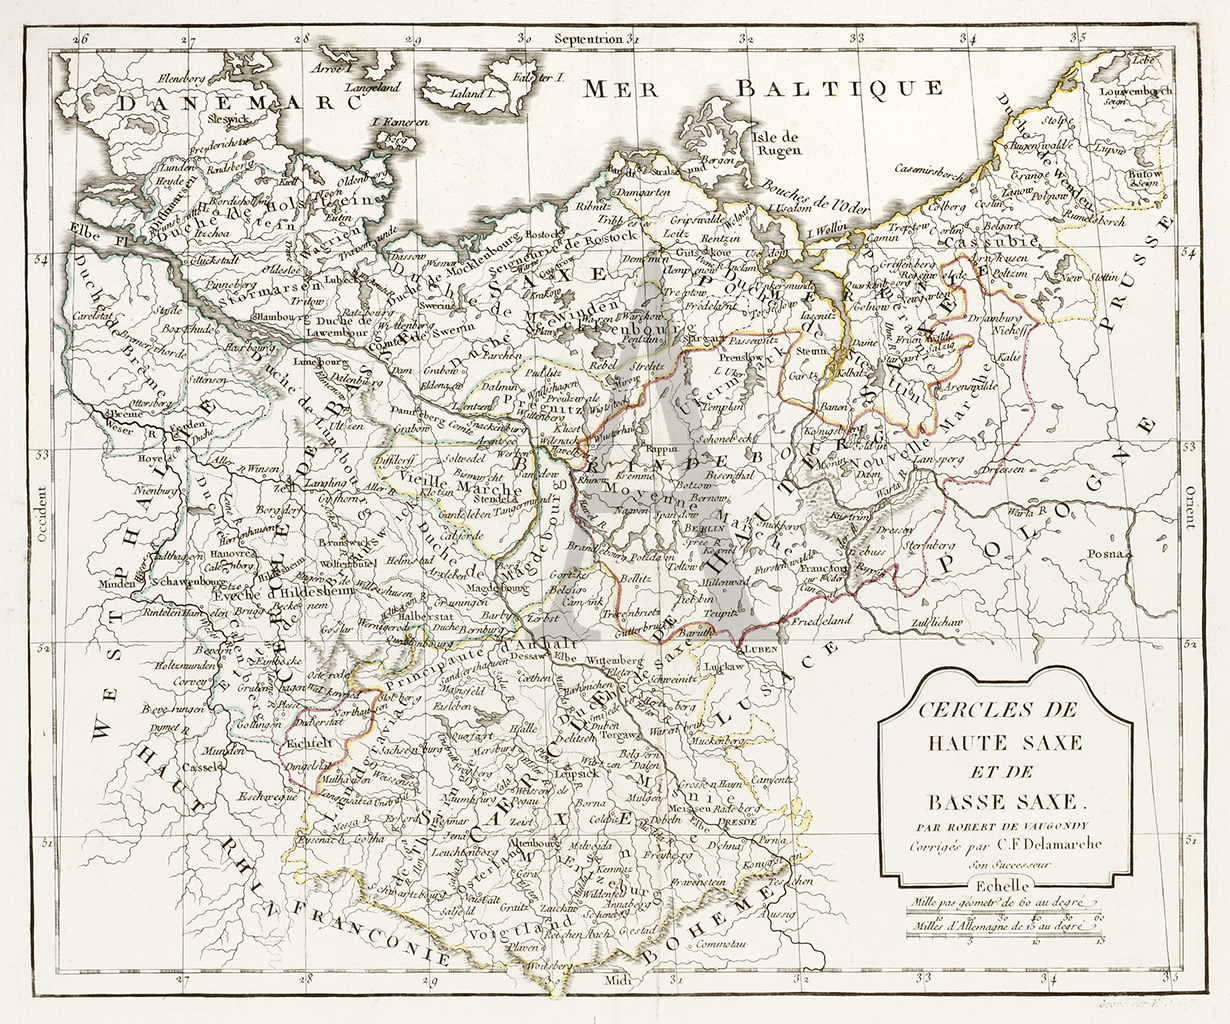 Cercles de Haute Saxe et de Basse Saxe. - Antique Print from 1806